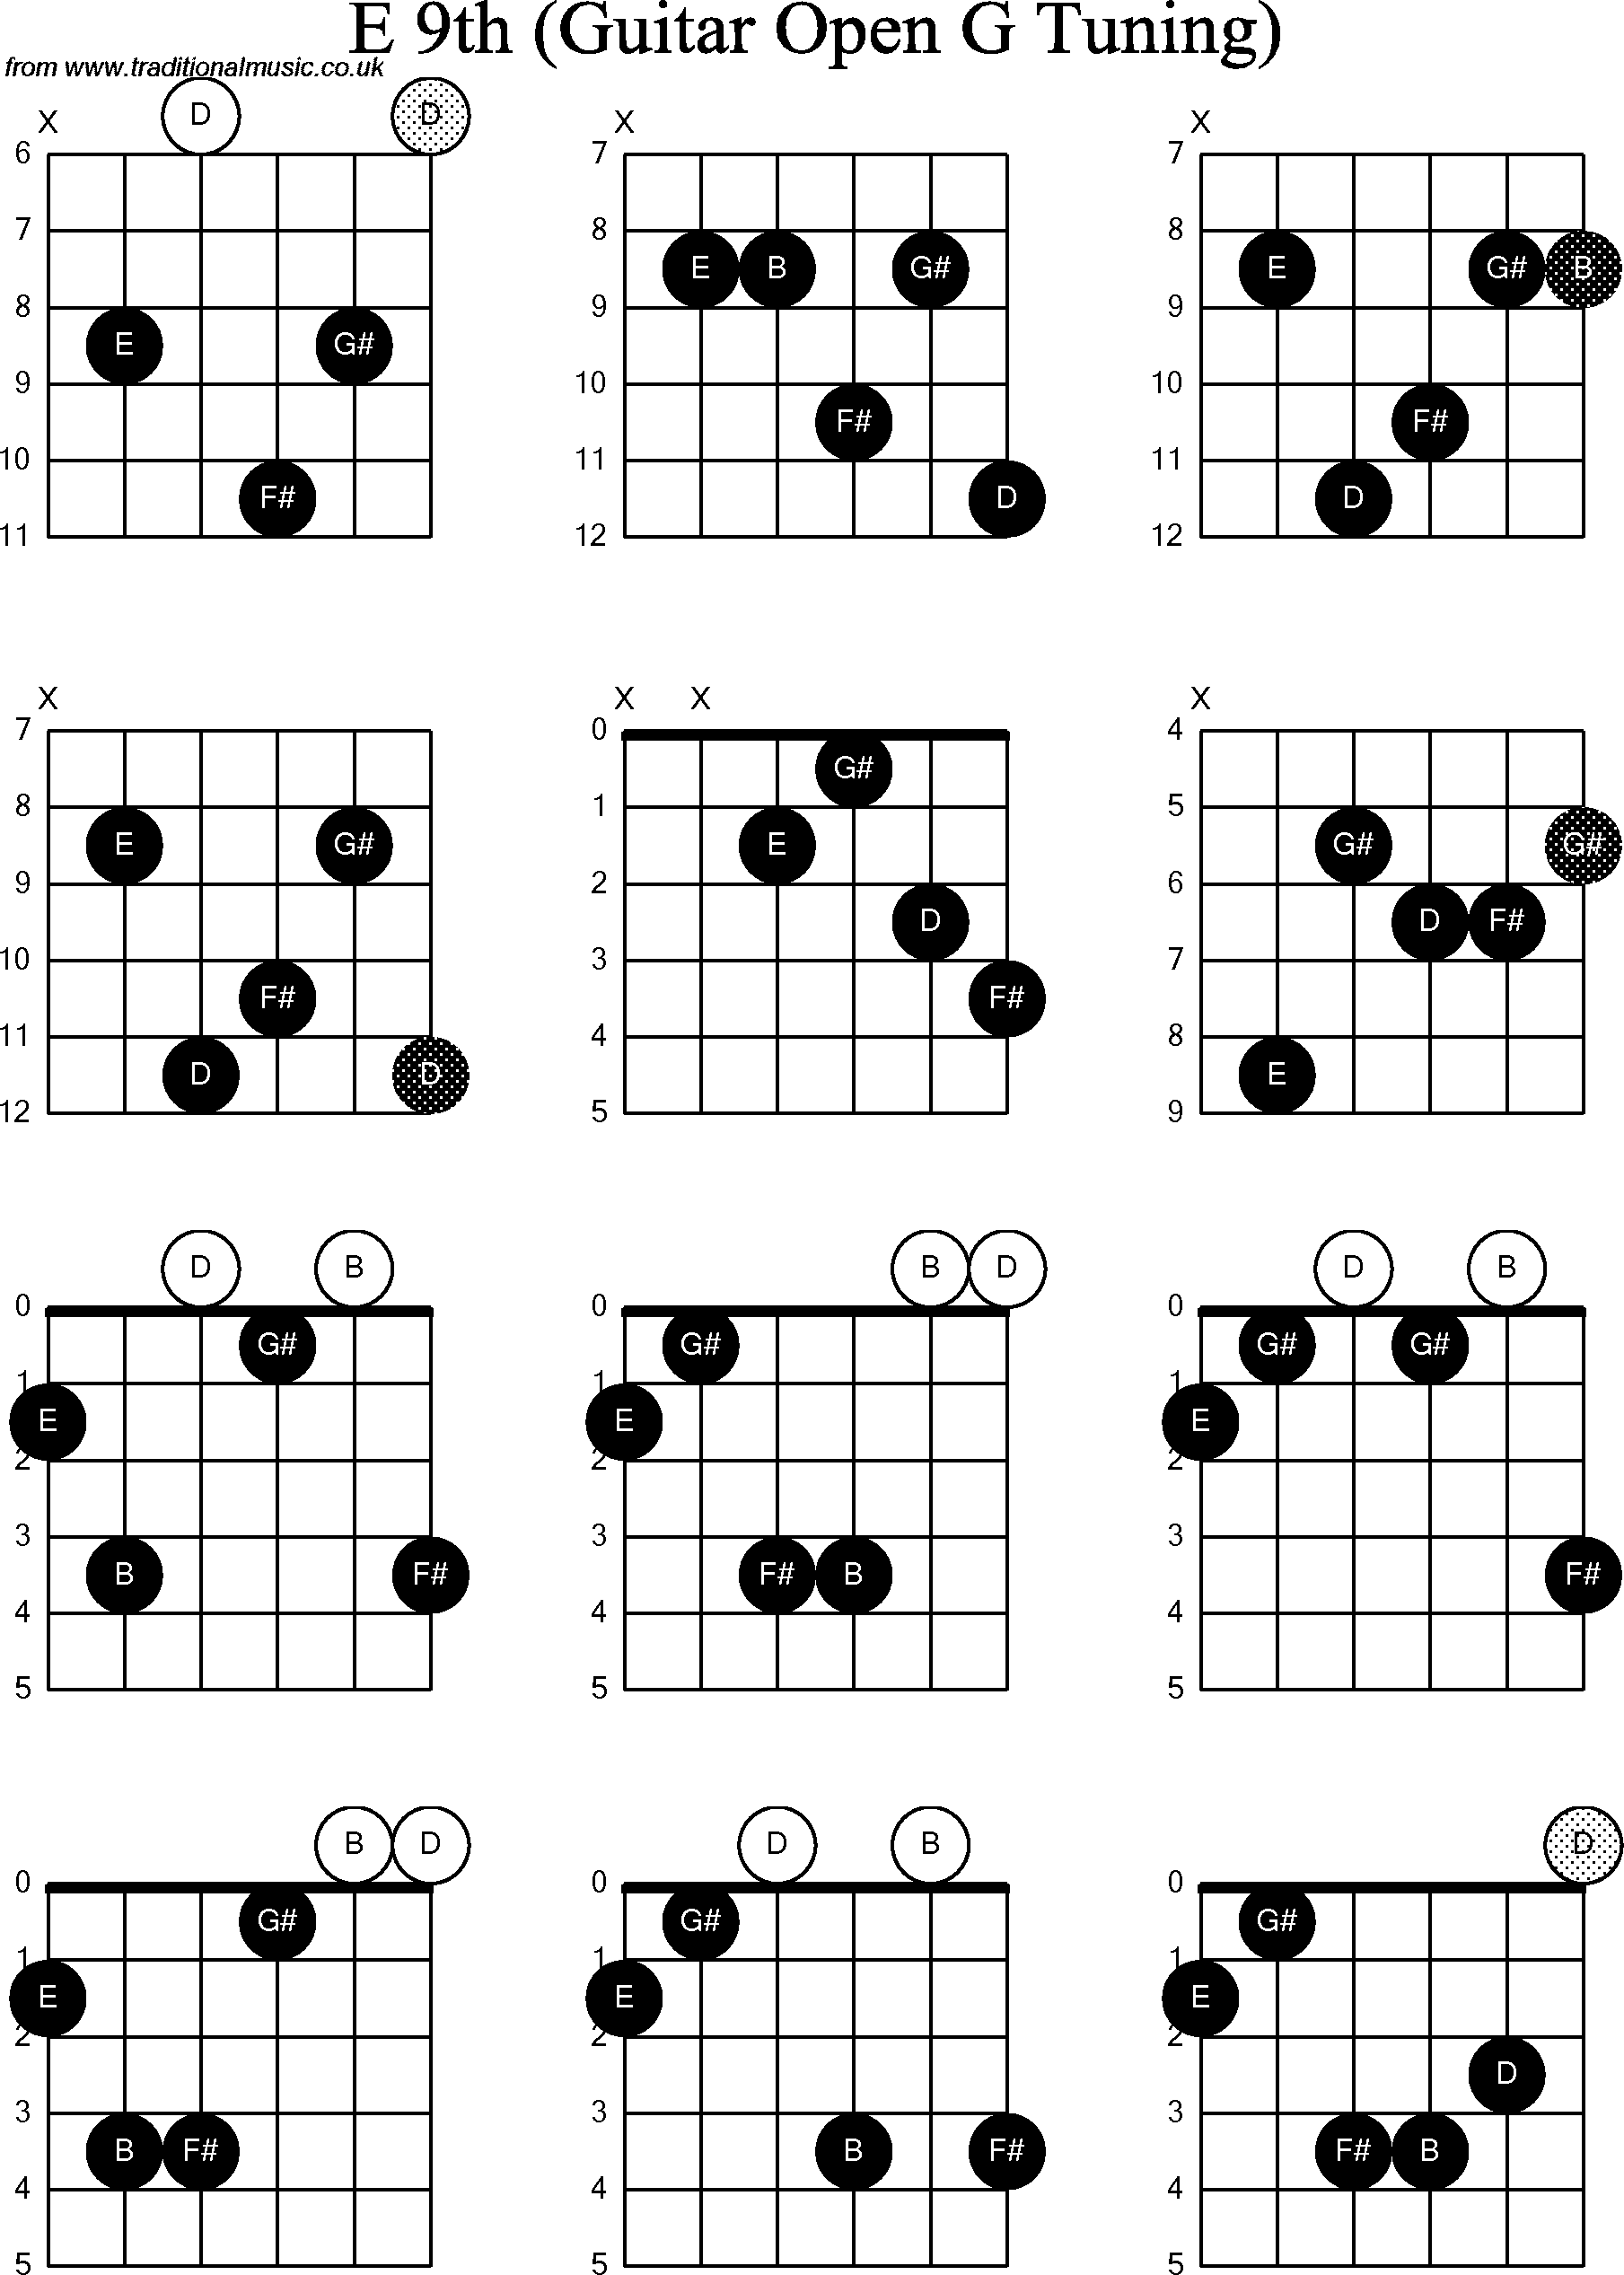 Chord diagrams for Dobro E9th